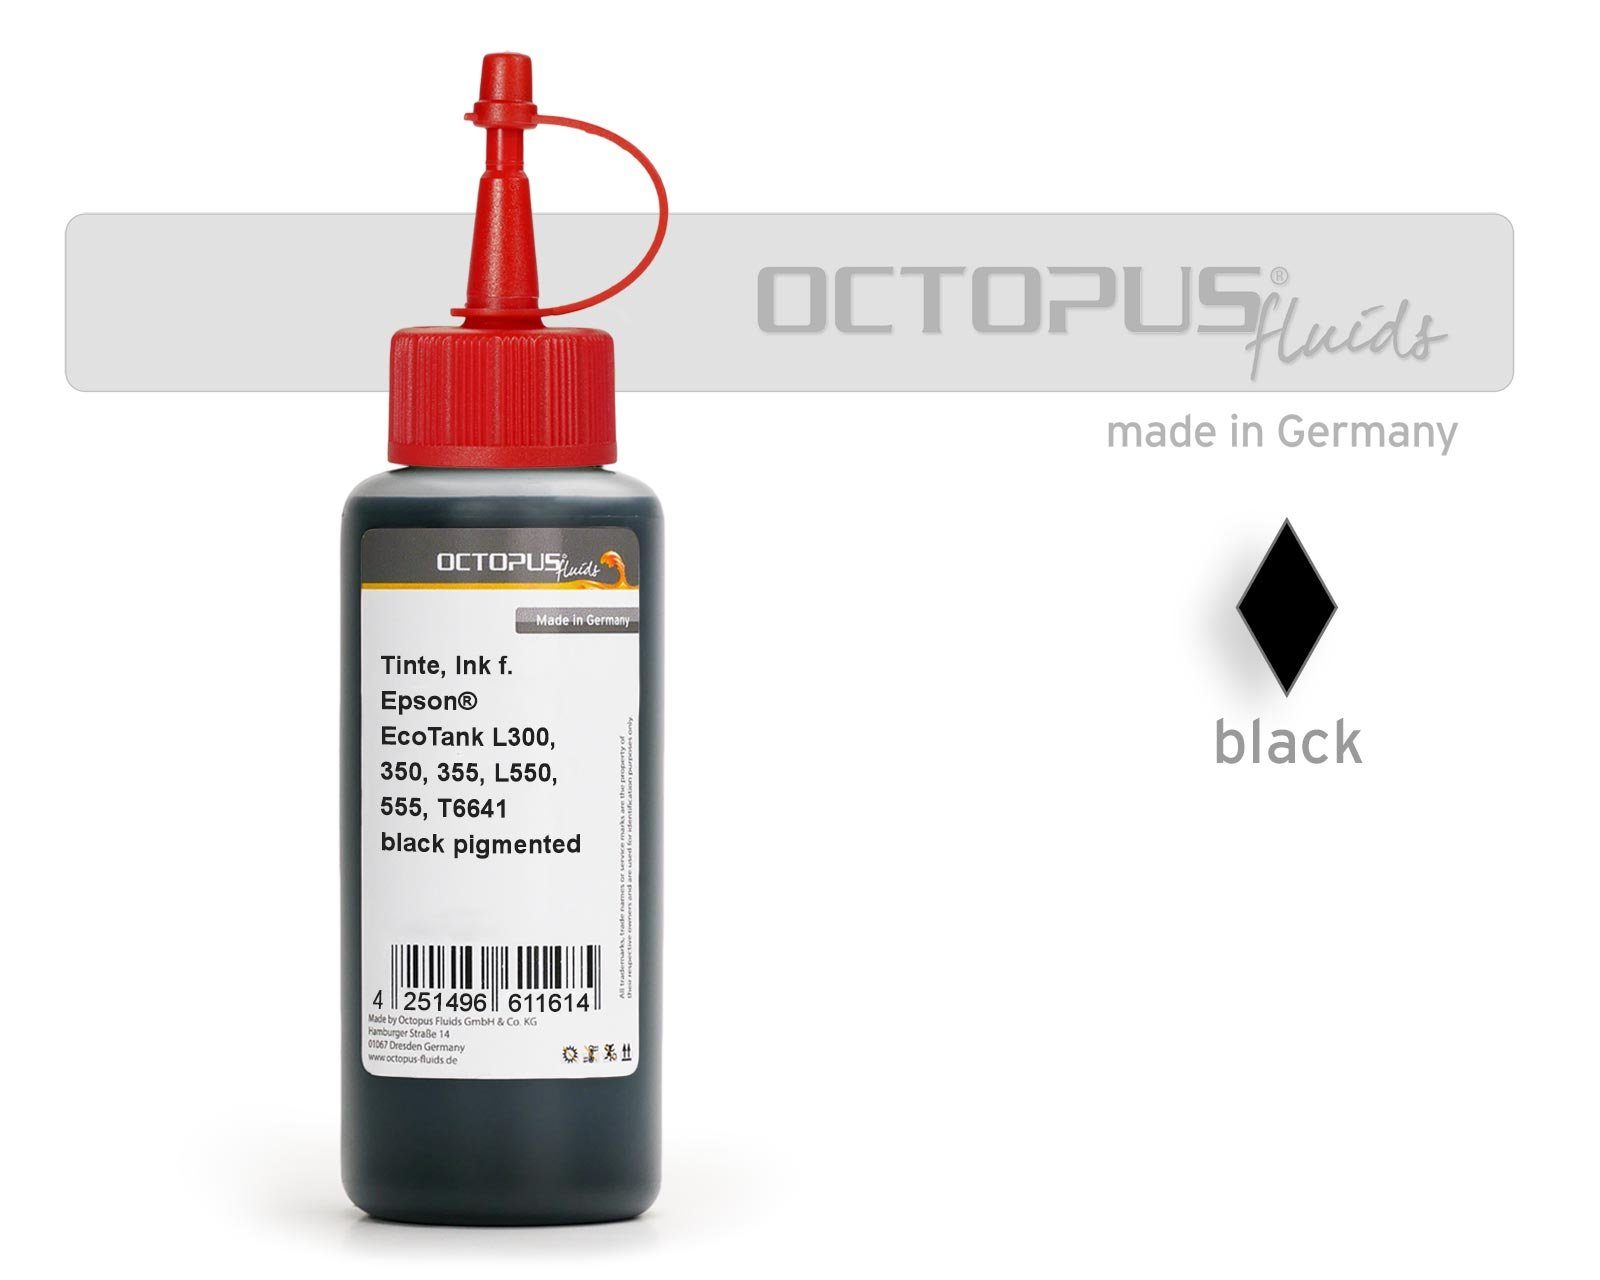 OCTOPUS Fluids Druckertinte Schwarz (für EcoTank L355, T6641 100 L300, schwarz ml) L555 Epson 1x Drucker, 100ml Epson, Nachfülltinte